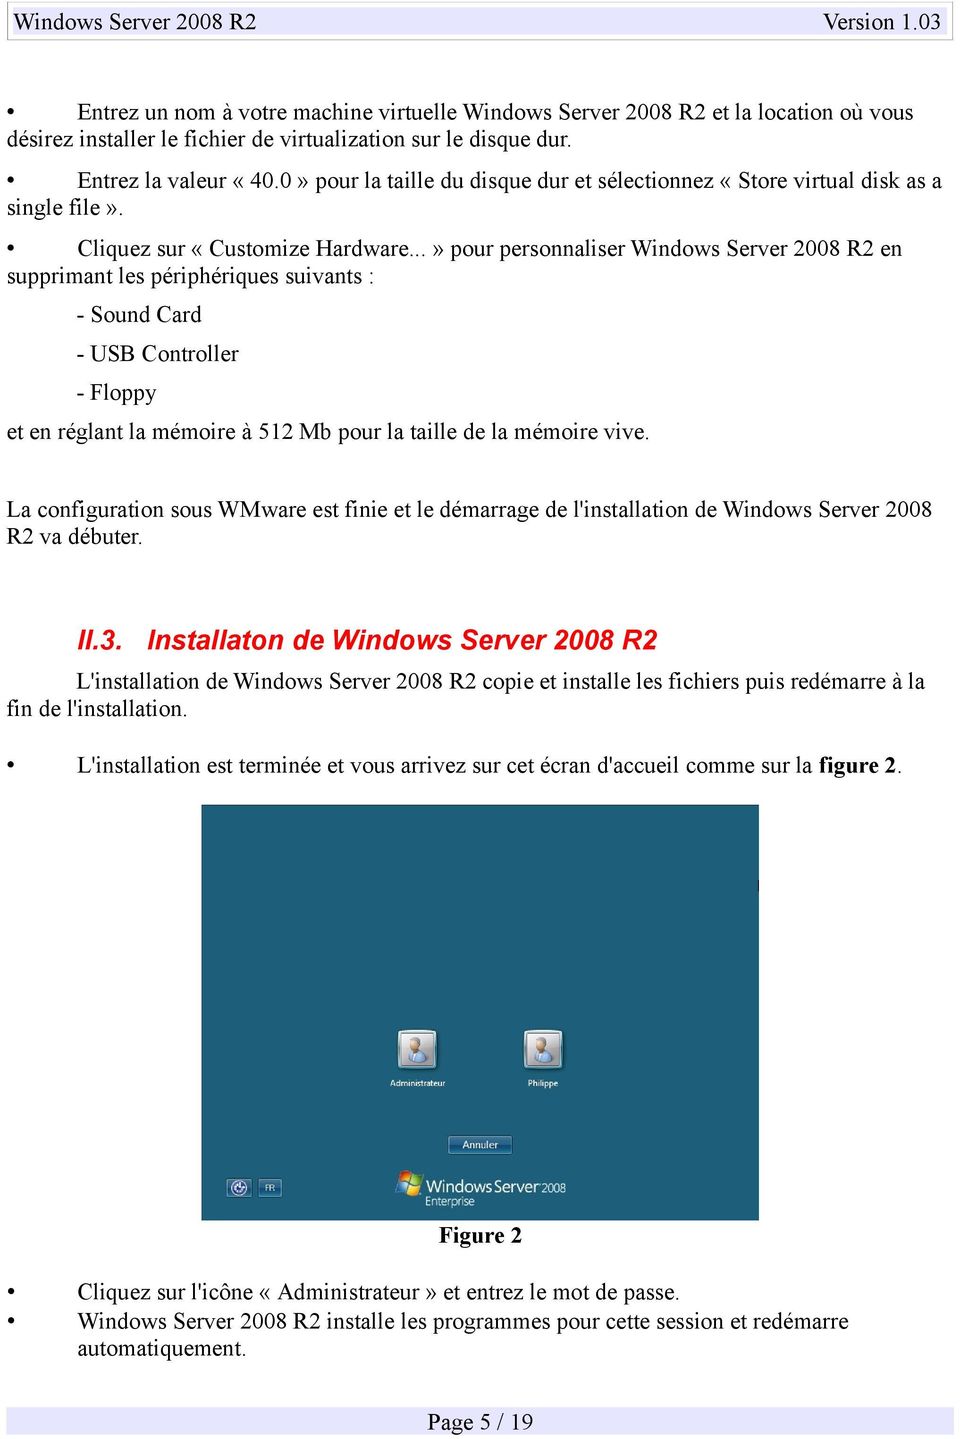 telecharger windows server 2008 r2 iso gratuit